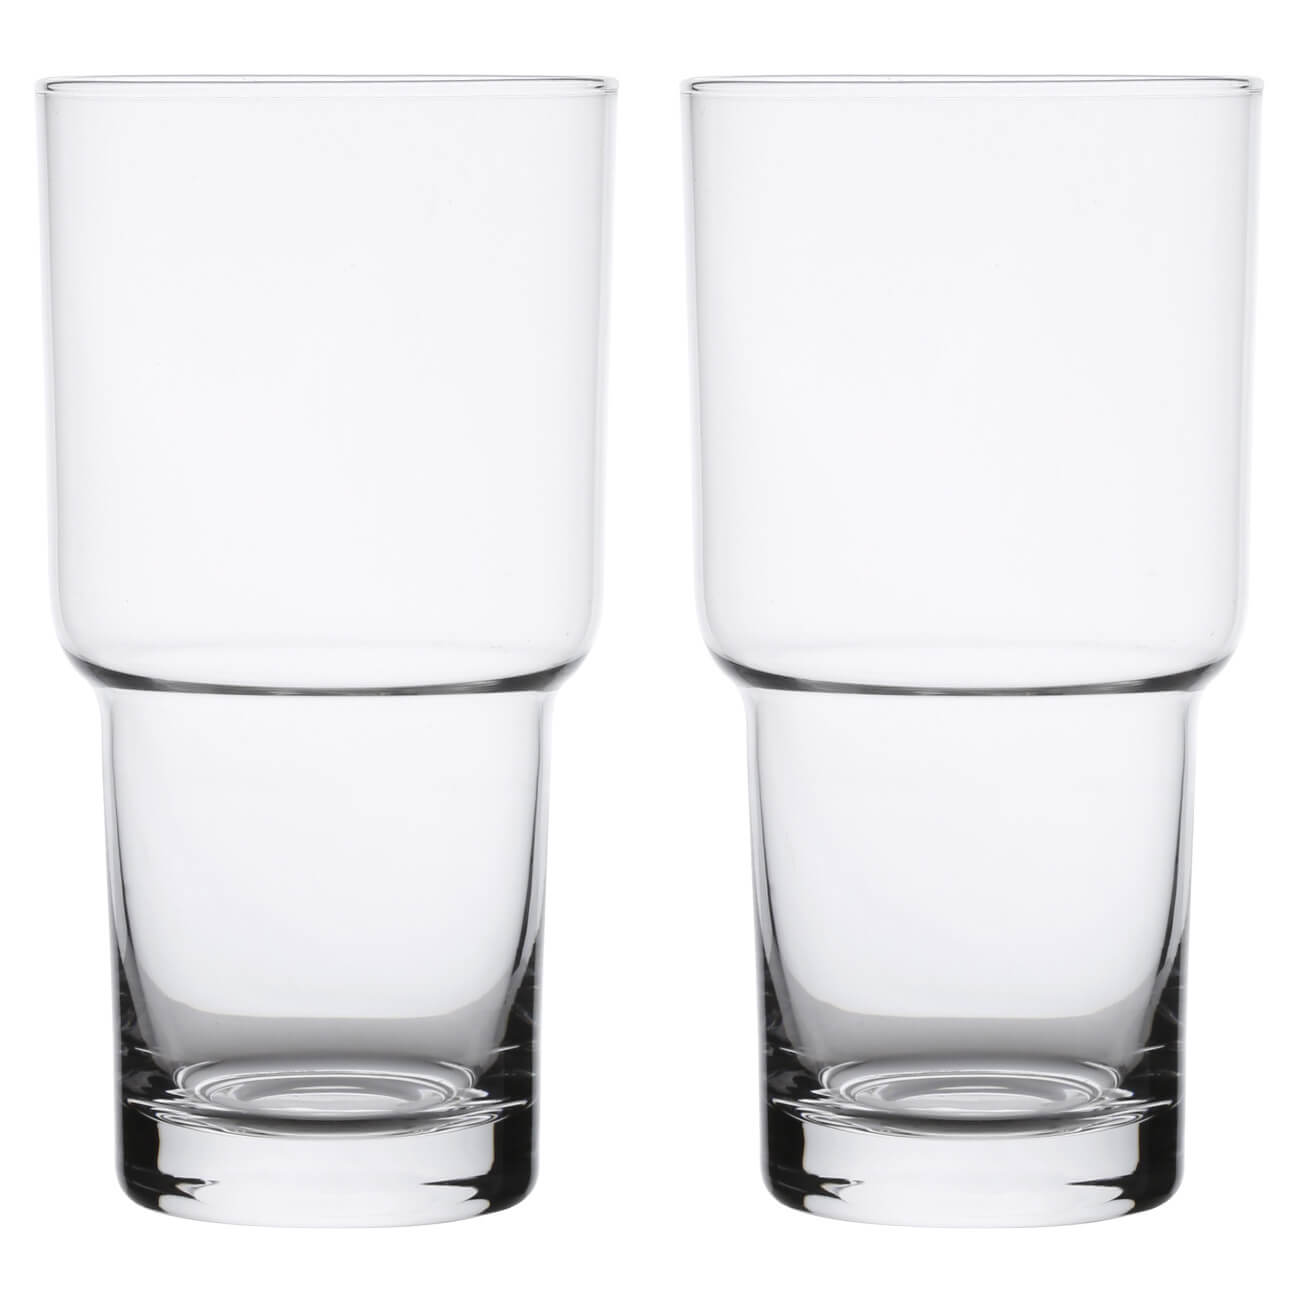 Стакан для пива, 500 мл, 2 шт, стекло, Clear стакан для пива luminarc тюлип пивные страны q1033 570мл